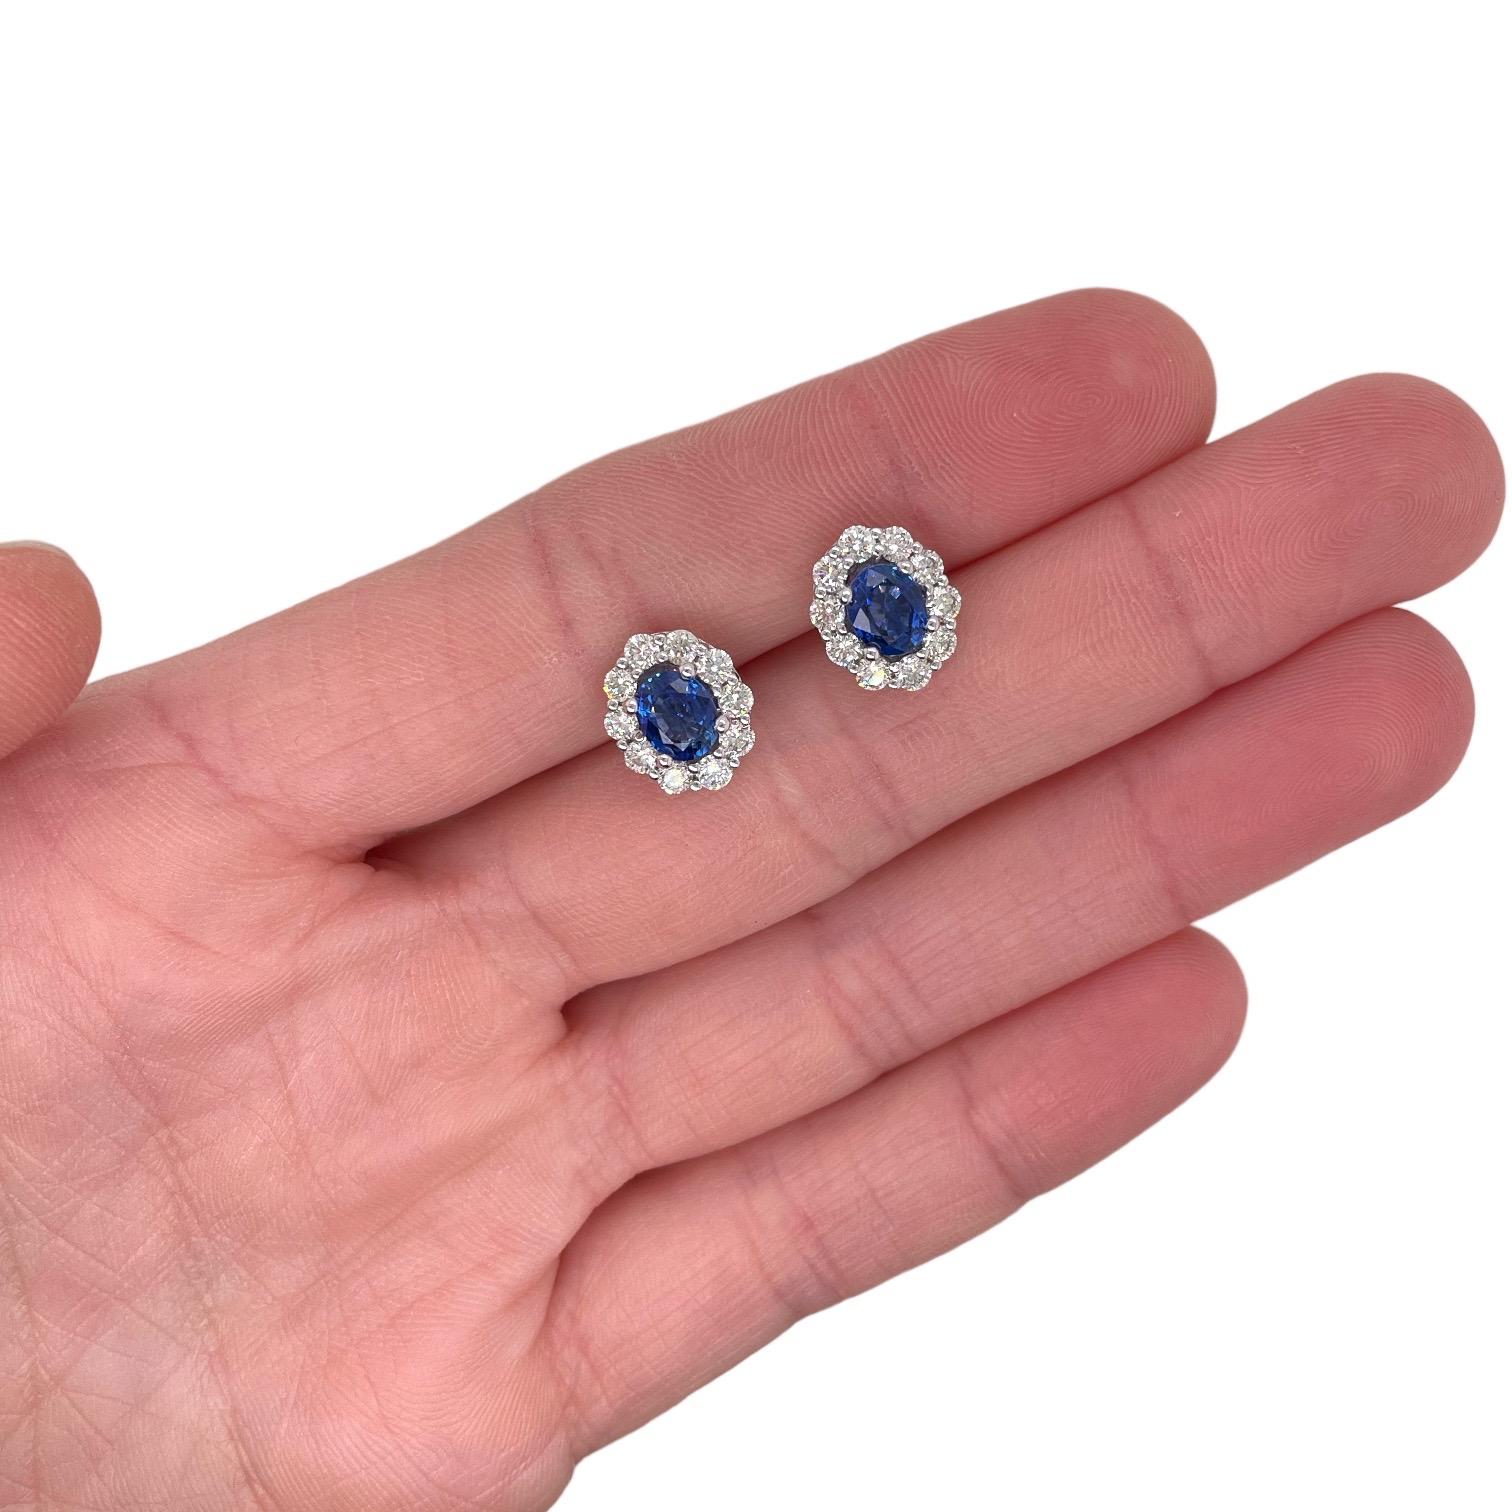 Pequeños pendientes con 2 zafiros azules ovalados de talla brillante finamente emparejados, 1,80 qt. Alrededor de los zafiros hay diamantes brillantes redondos que crean un halo, con un total de 1,05 tcw. Los diamantes son incoloros y de claridad